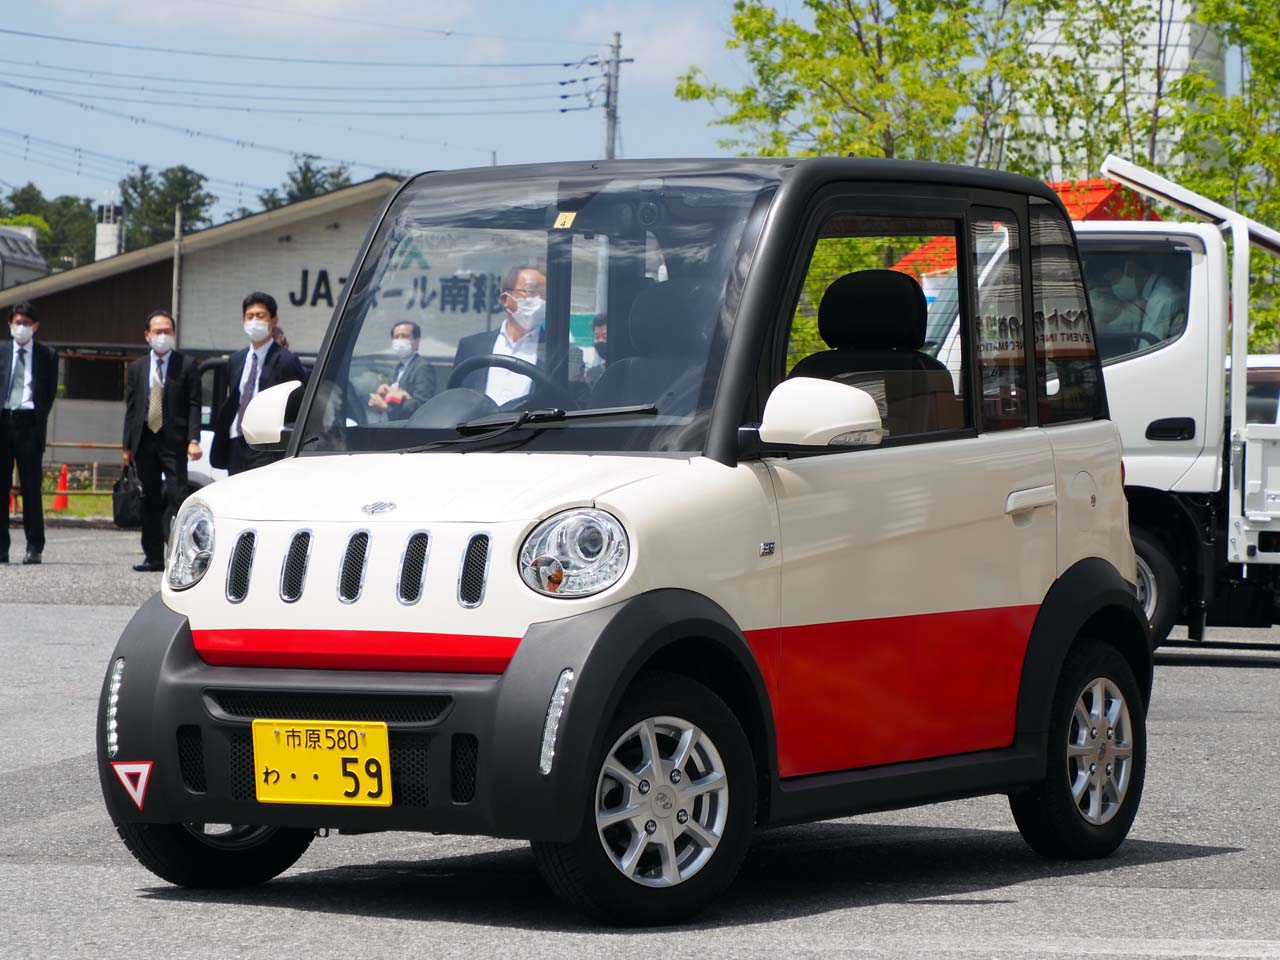 今春、出光興産と千葉県市原市が手を組み、カーシェアリングサービスを開始。写真は、市民・観光客に向けて超小型モビリティ「認定車」として出光タジマEVが提供する2人乗りのEV「ジャイアン」。